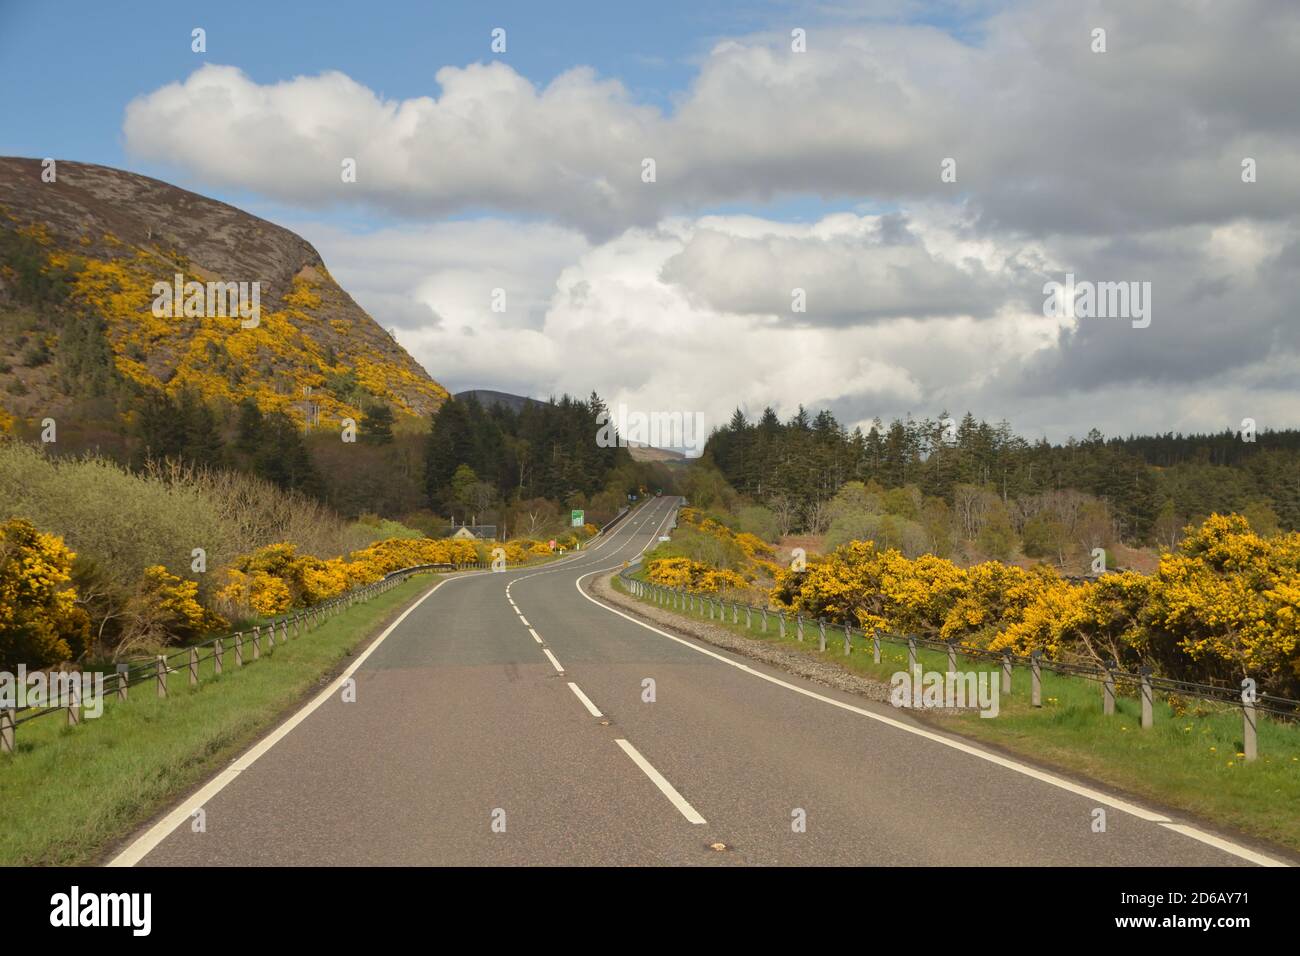 La strada principale A9, solitamente trafficata, vicino a Golspie, Scozia, durante il periodo di chiusura della covid-19, maggio 2020. Parte del percorso turistico della costa settentrionale 500. Foto Stock